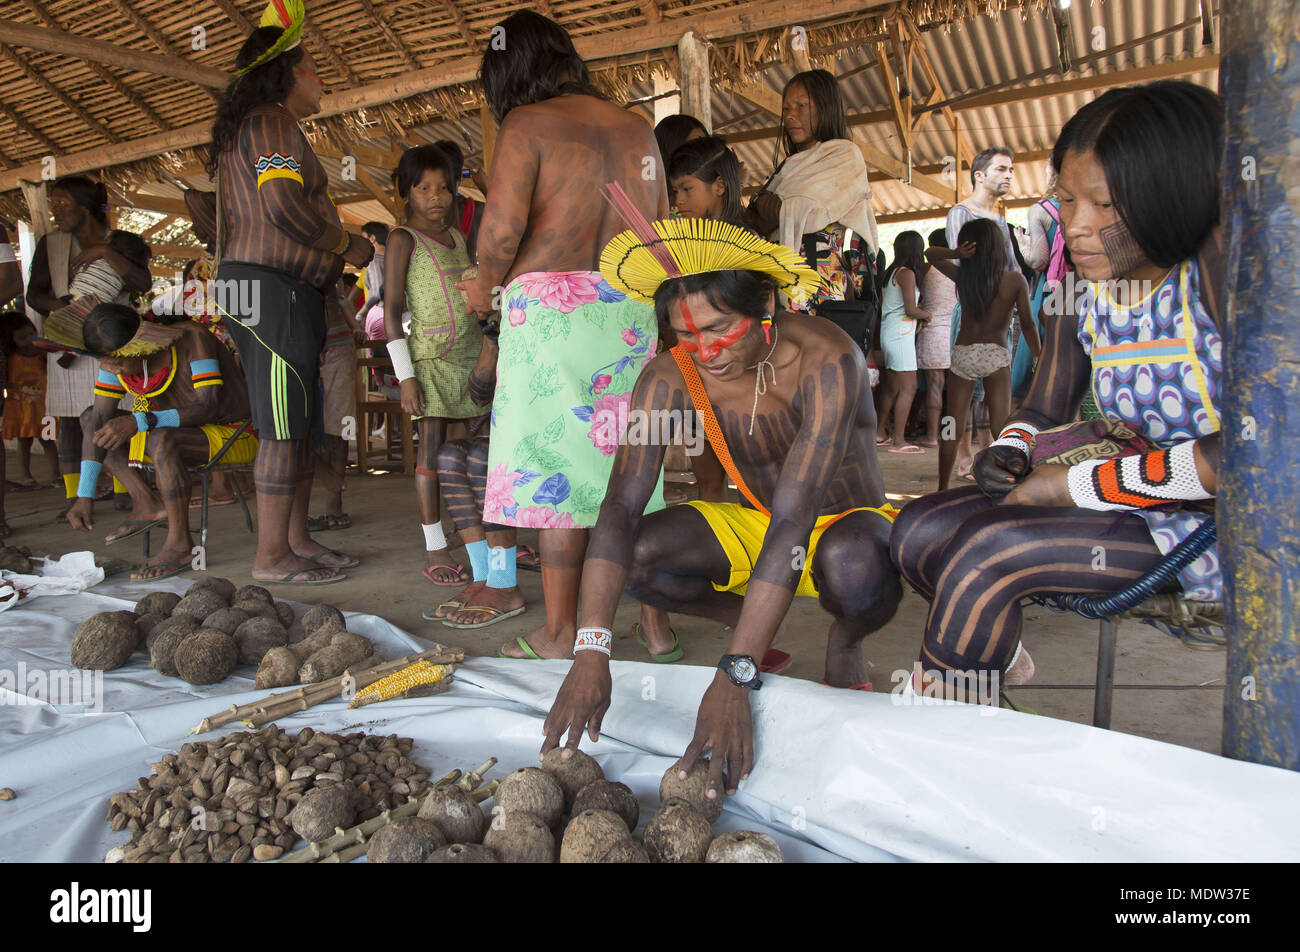 Échange équitable les semences traditionnelles dans Moikarako Kayapo village groupe ethnique avec la participation d'autres villages Kayapó et Krahô Banque D'Images